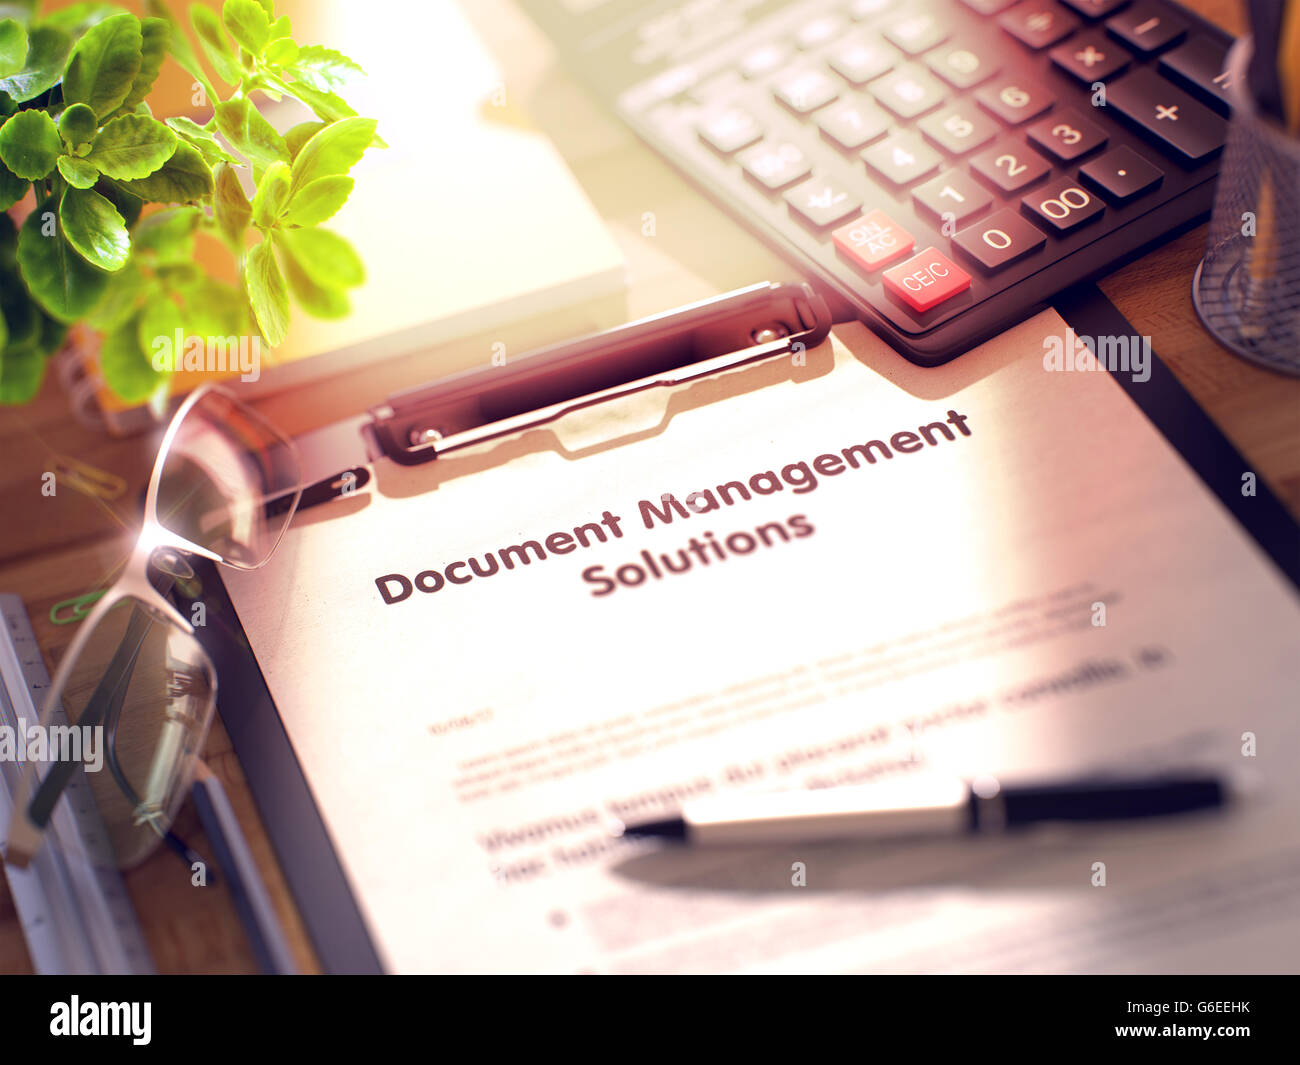 Dokument-Management-Lösungen - Text in Zwischenablage. Stockfoto